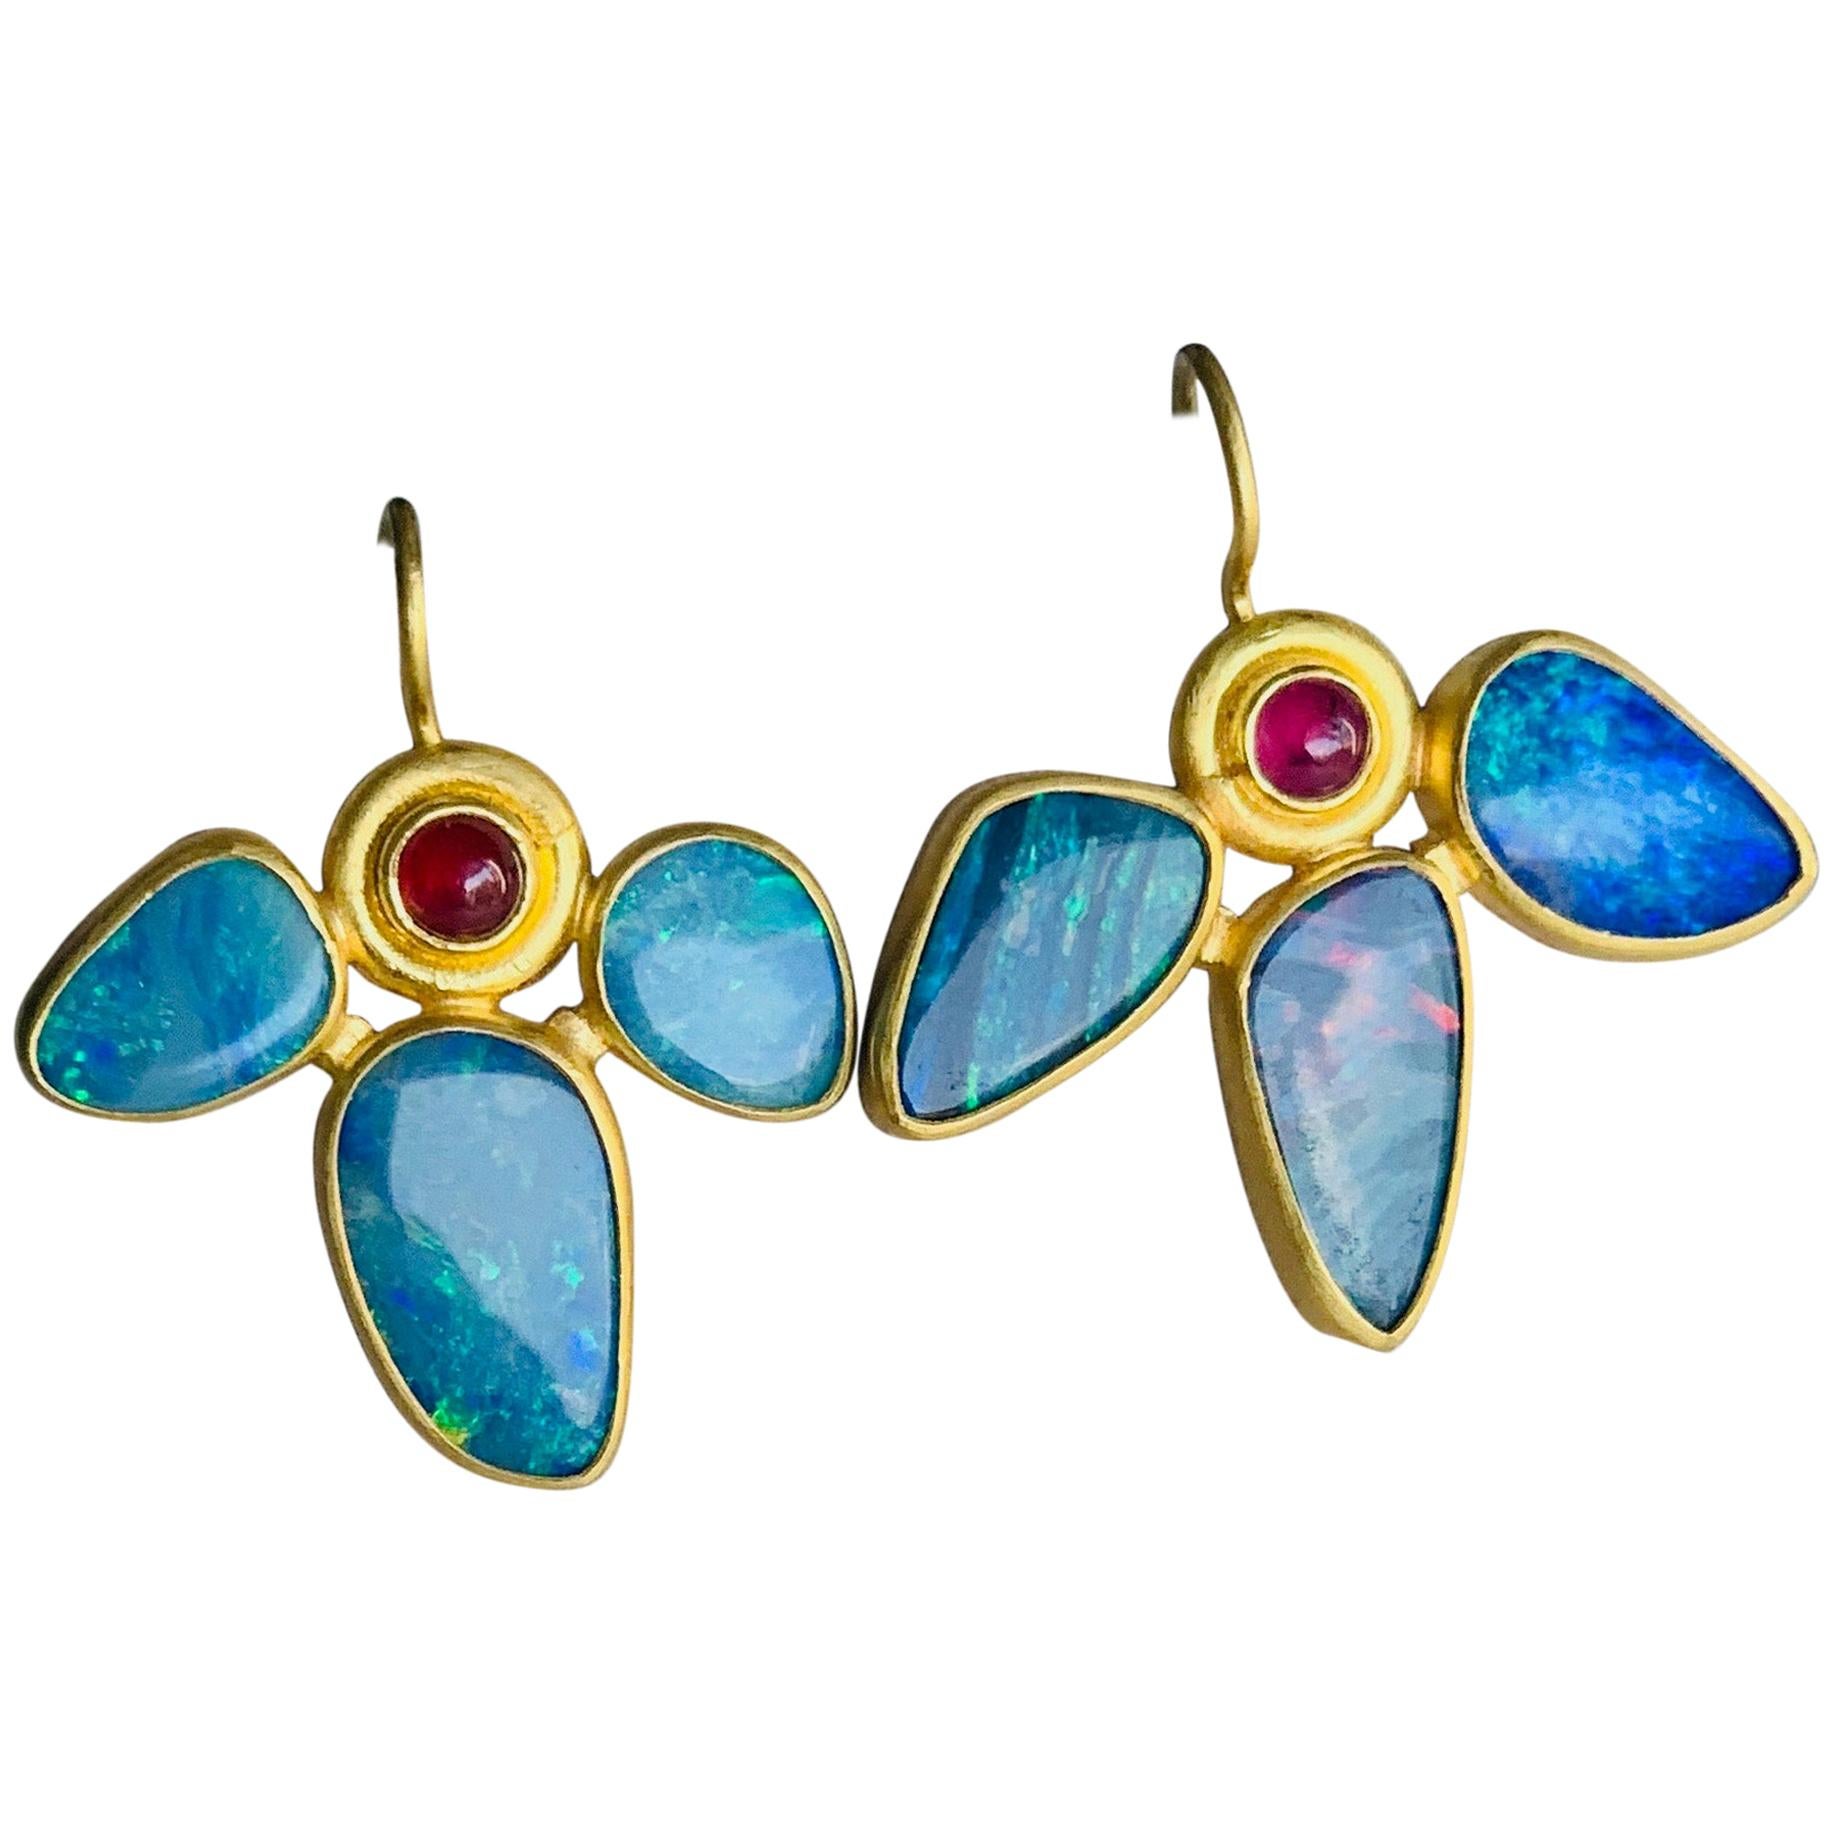 Opal and Ruby Earrings in 22 Karat Gold